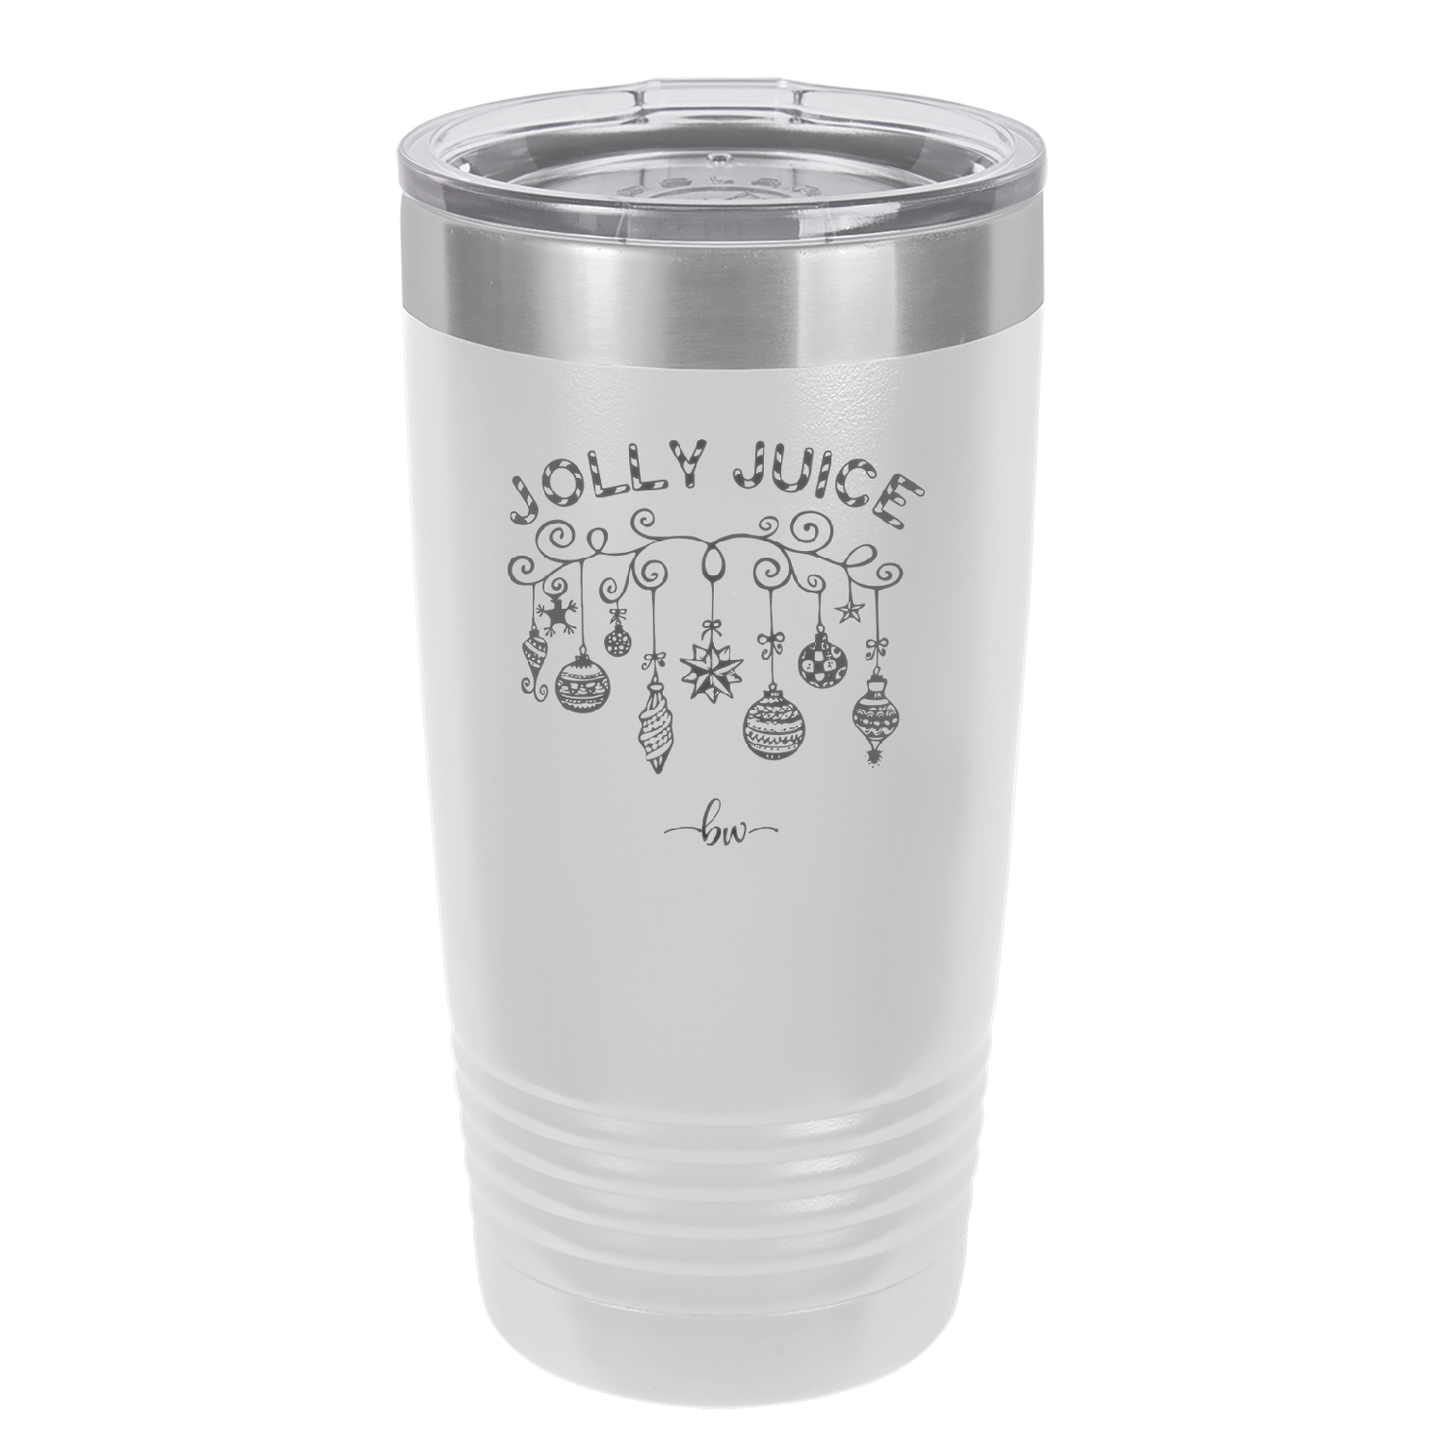 Jolly Juice - Laser Engraved Stainless Steel Drinkware - 1232 -